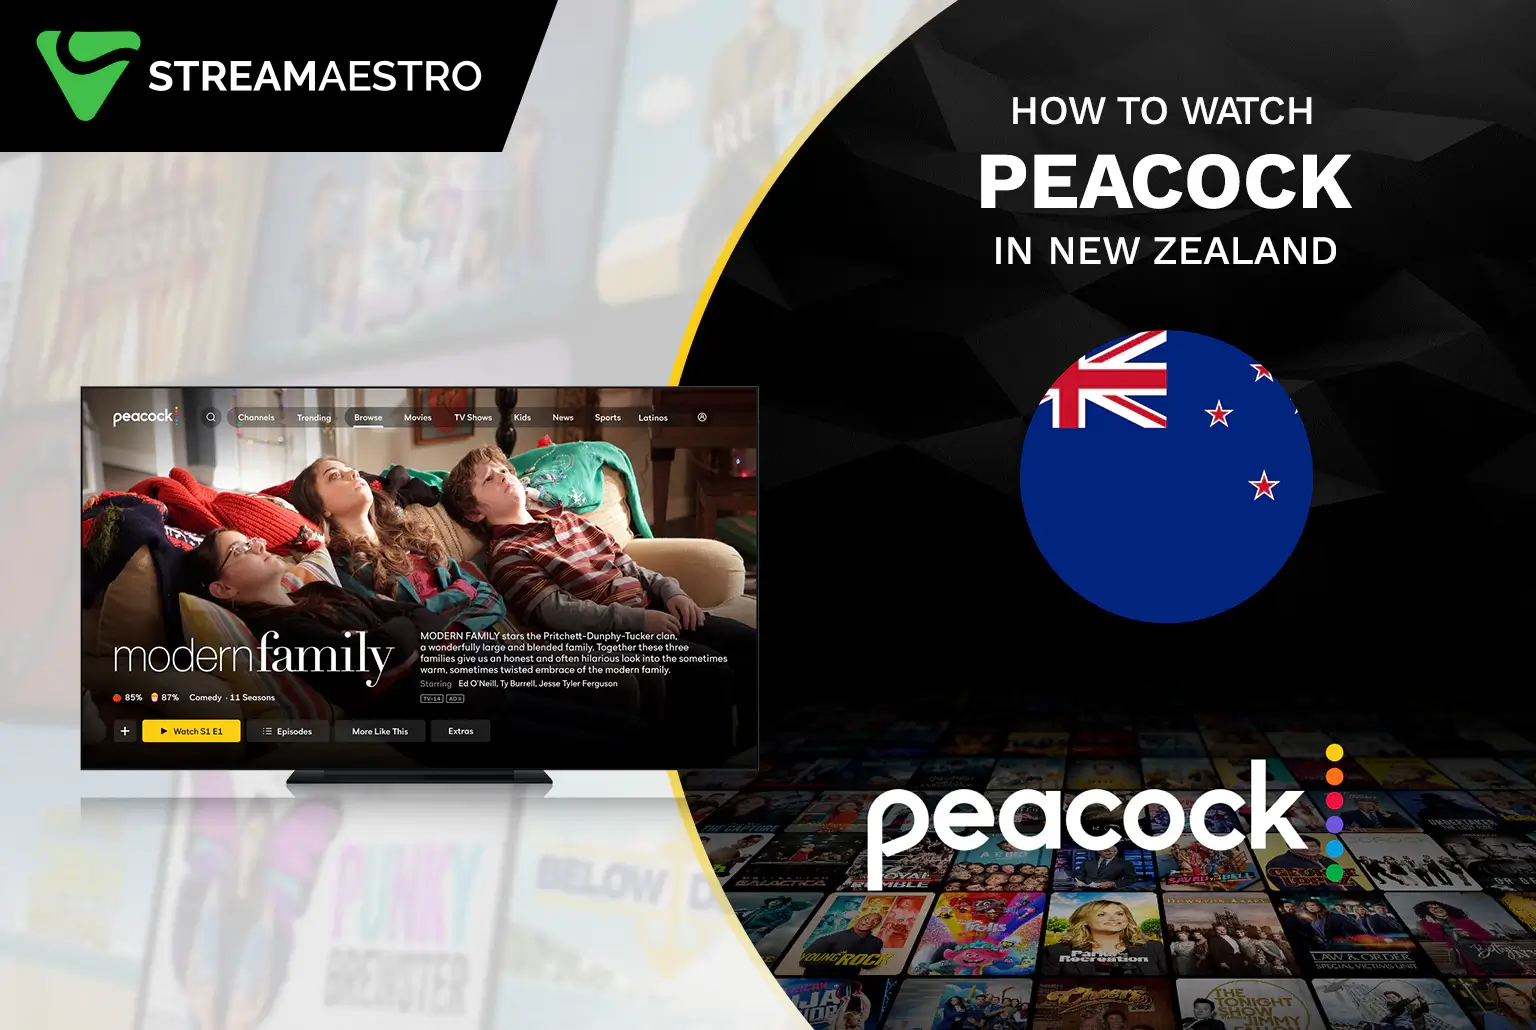 Peacock TV in New Zealand